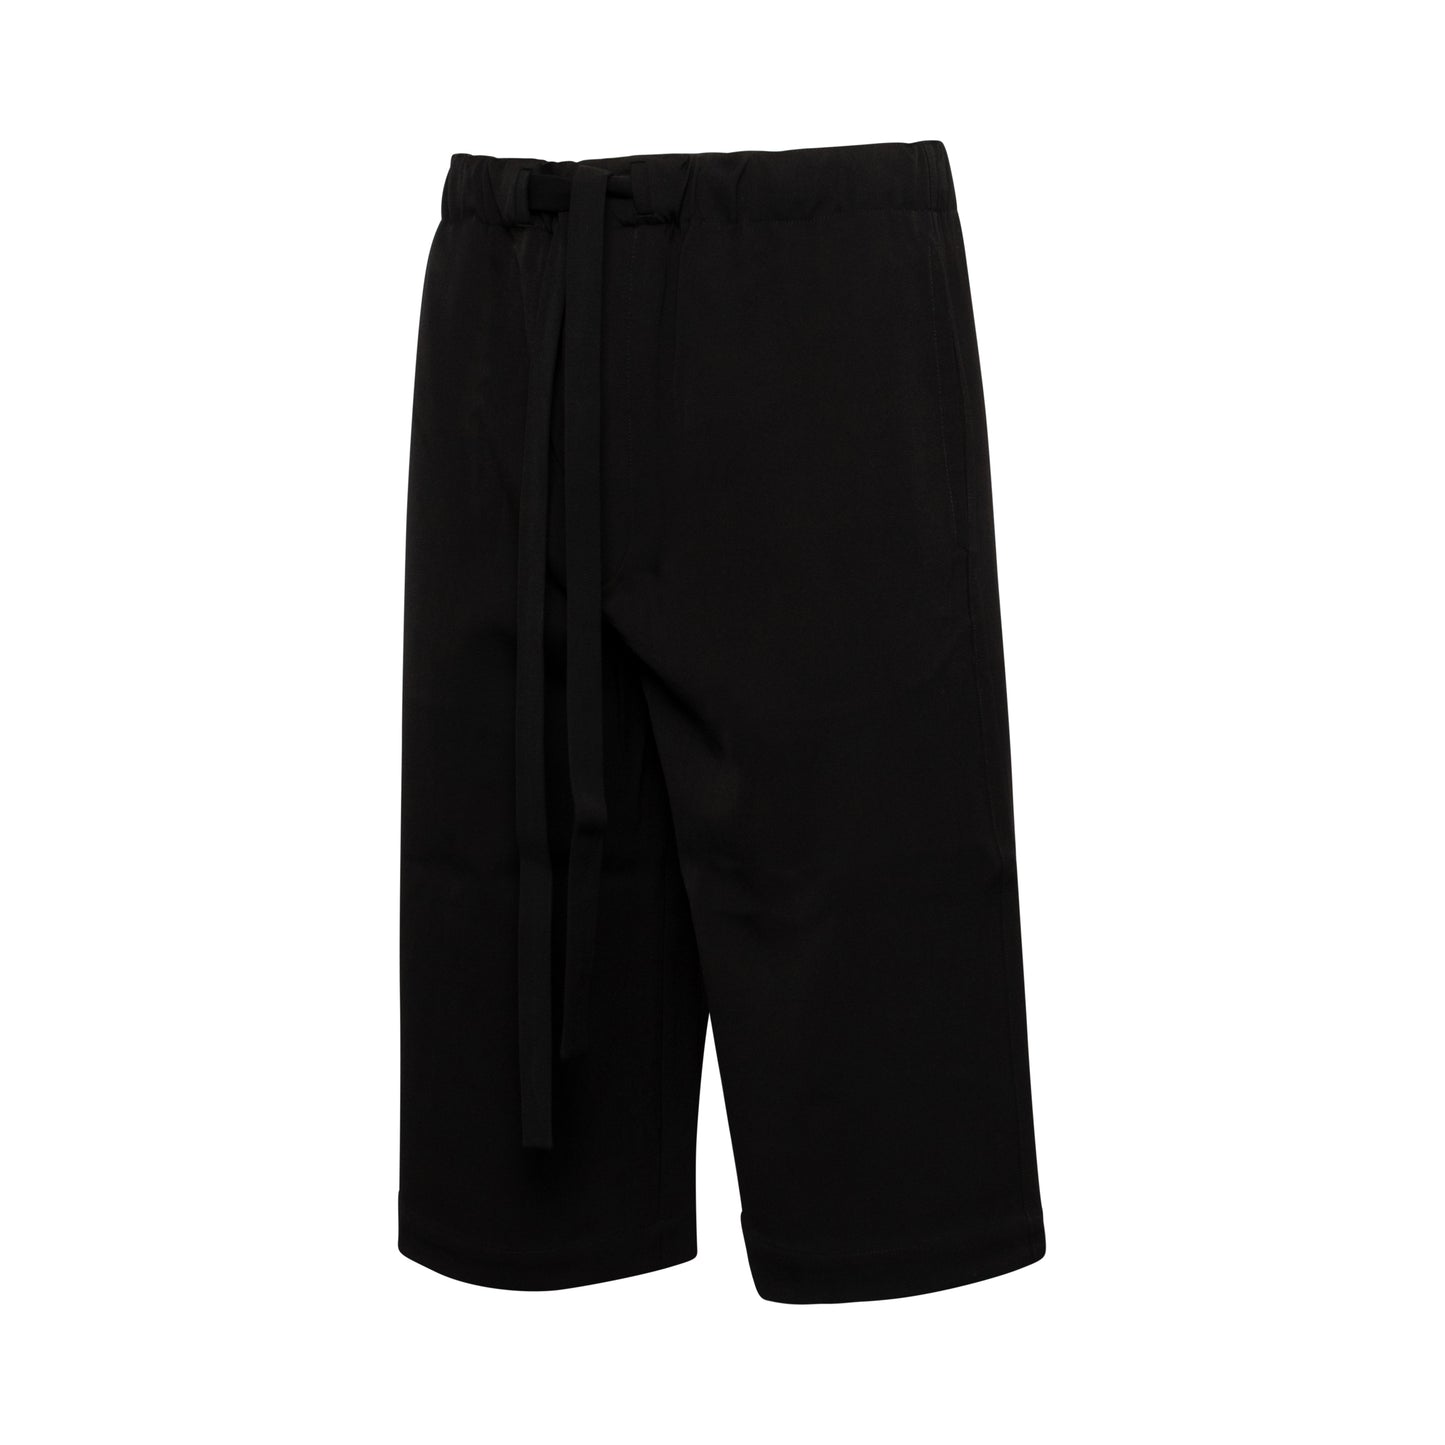 Drawstring Shorts in Black